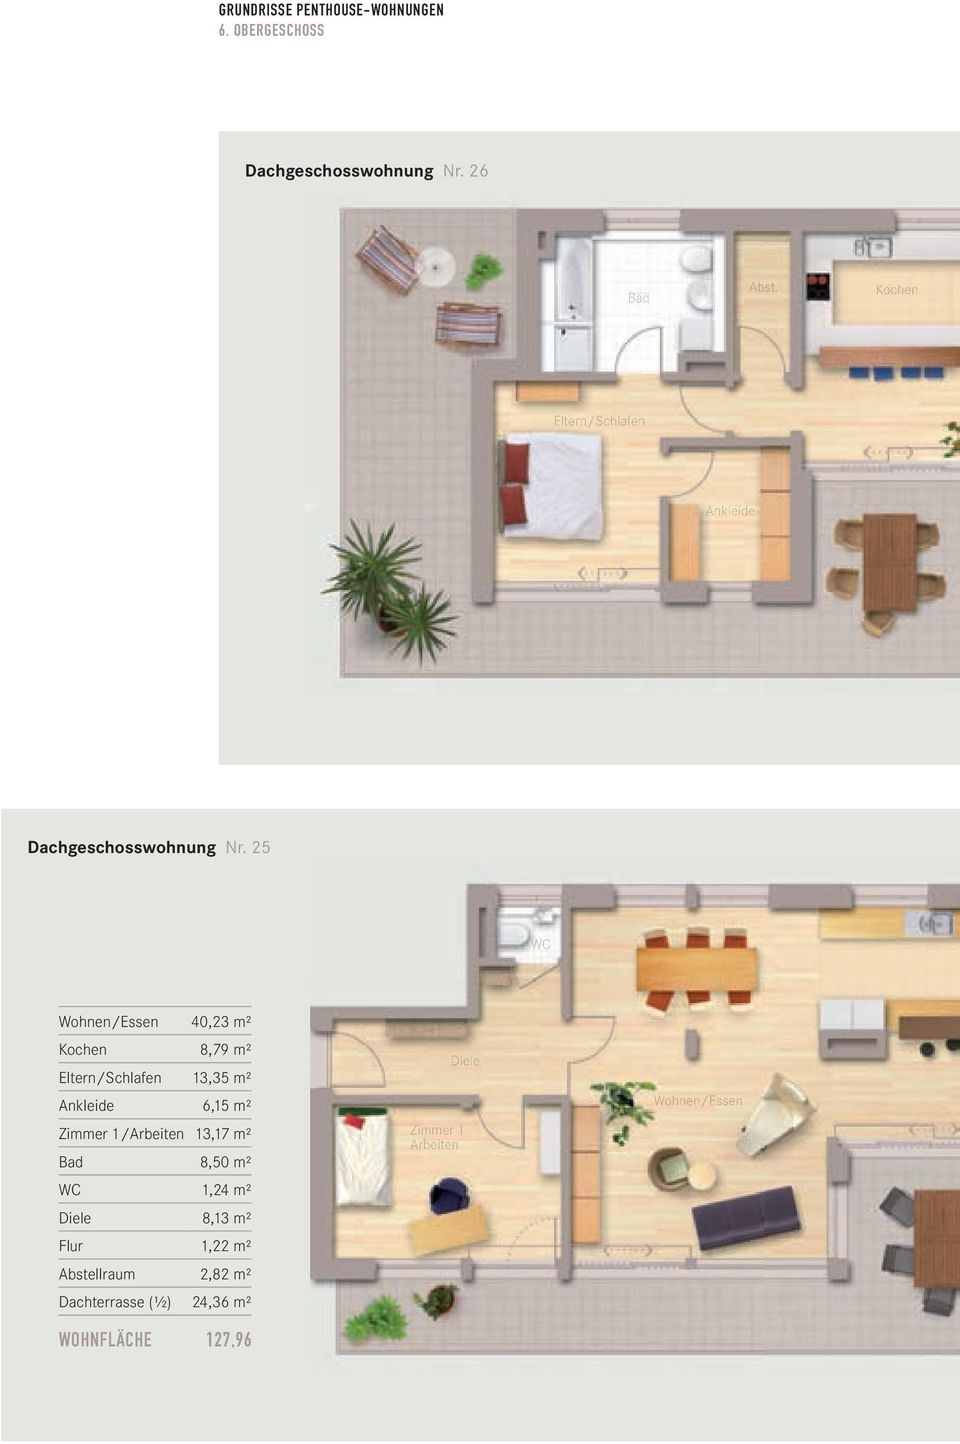 25 WC Wohnen/Essen 40,23 m² Kochen 8,79 m² Eltern/Schlafen 13,35 m² Ankleide 6,15 m² Zimmer